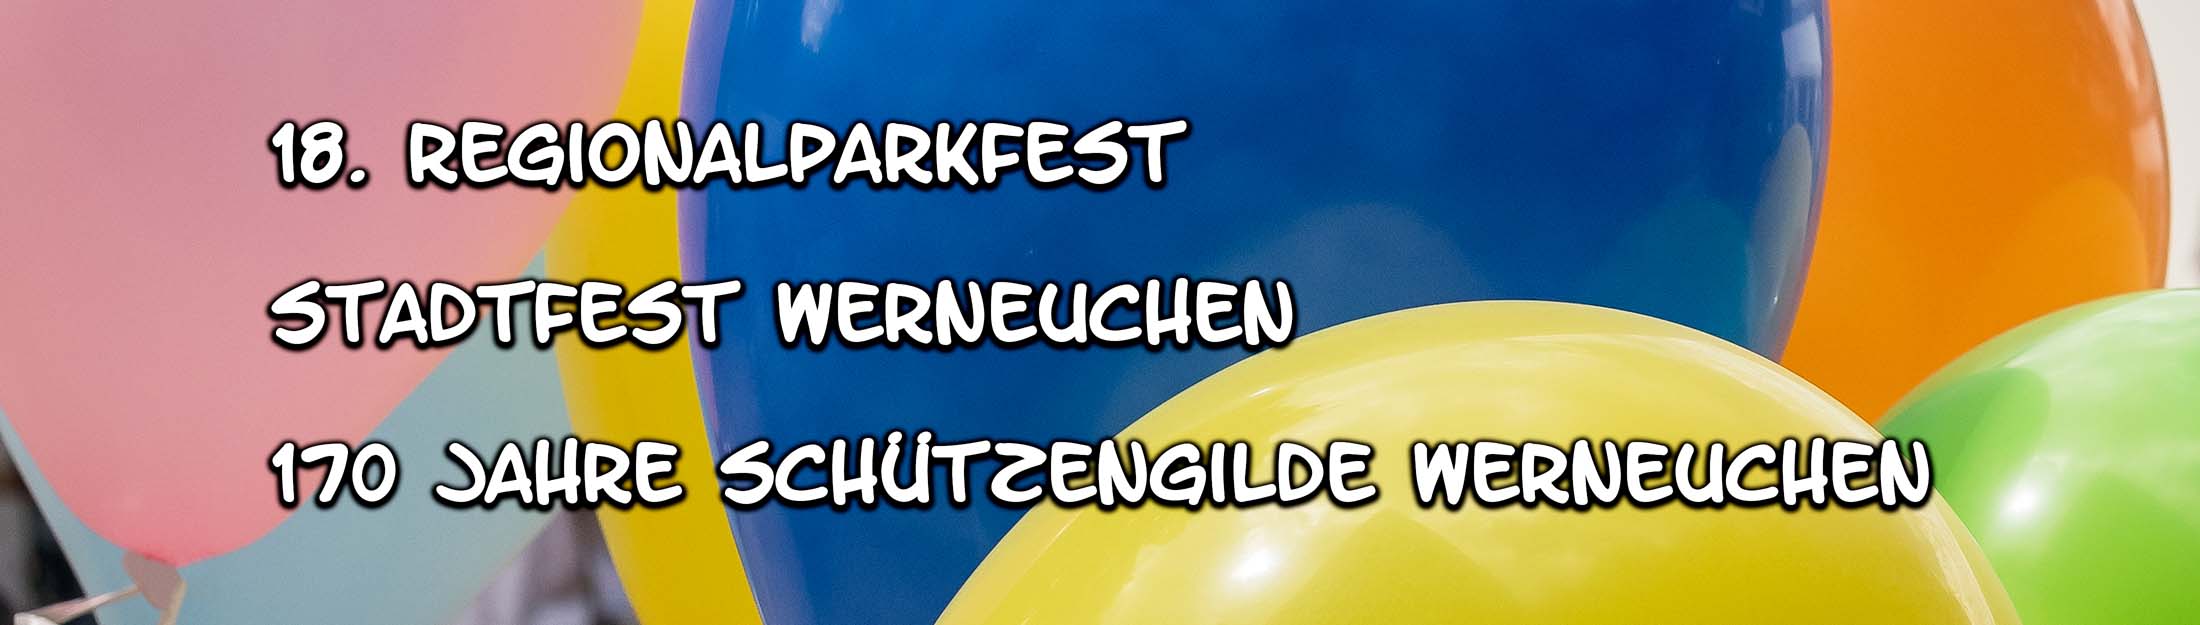 Altstadtfest Werneuchen 2018 Header